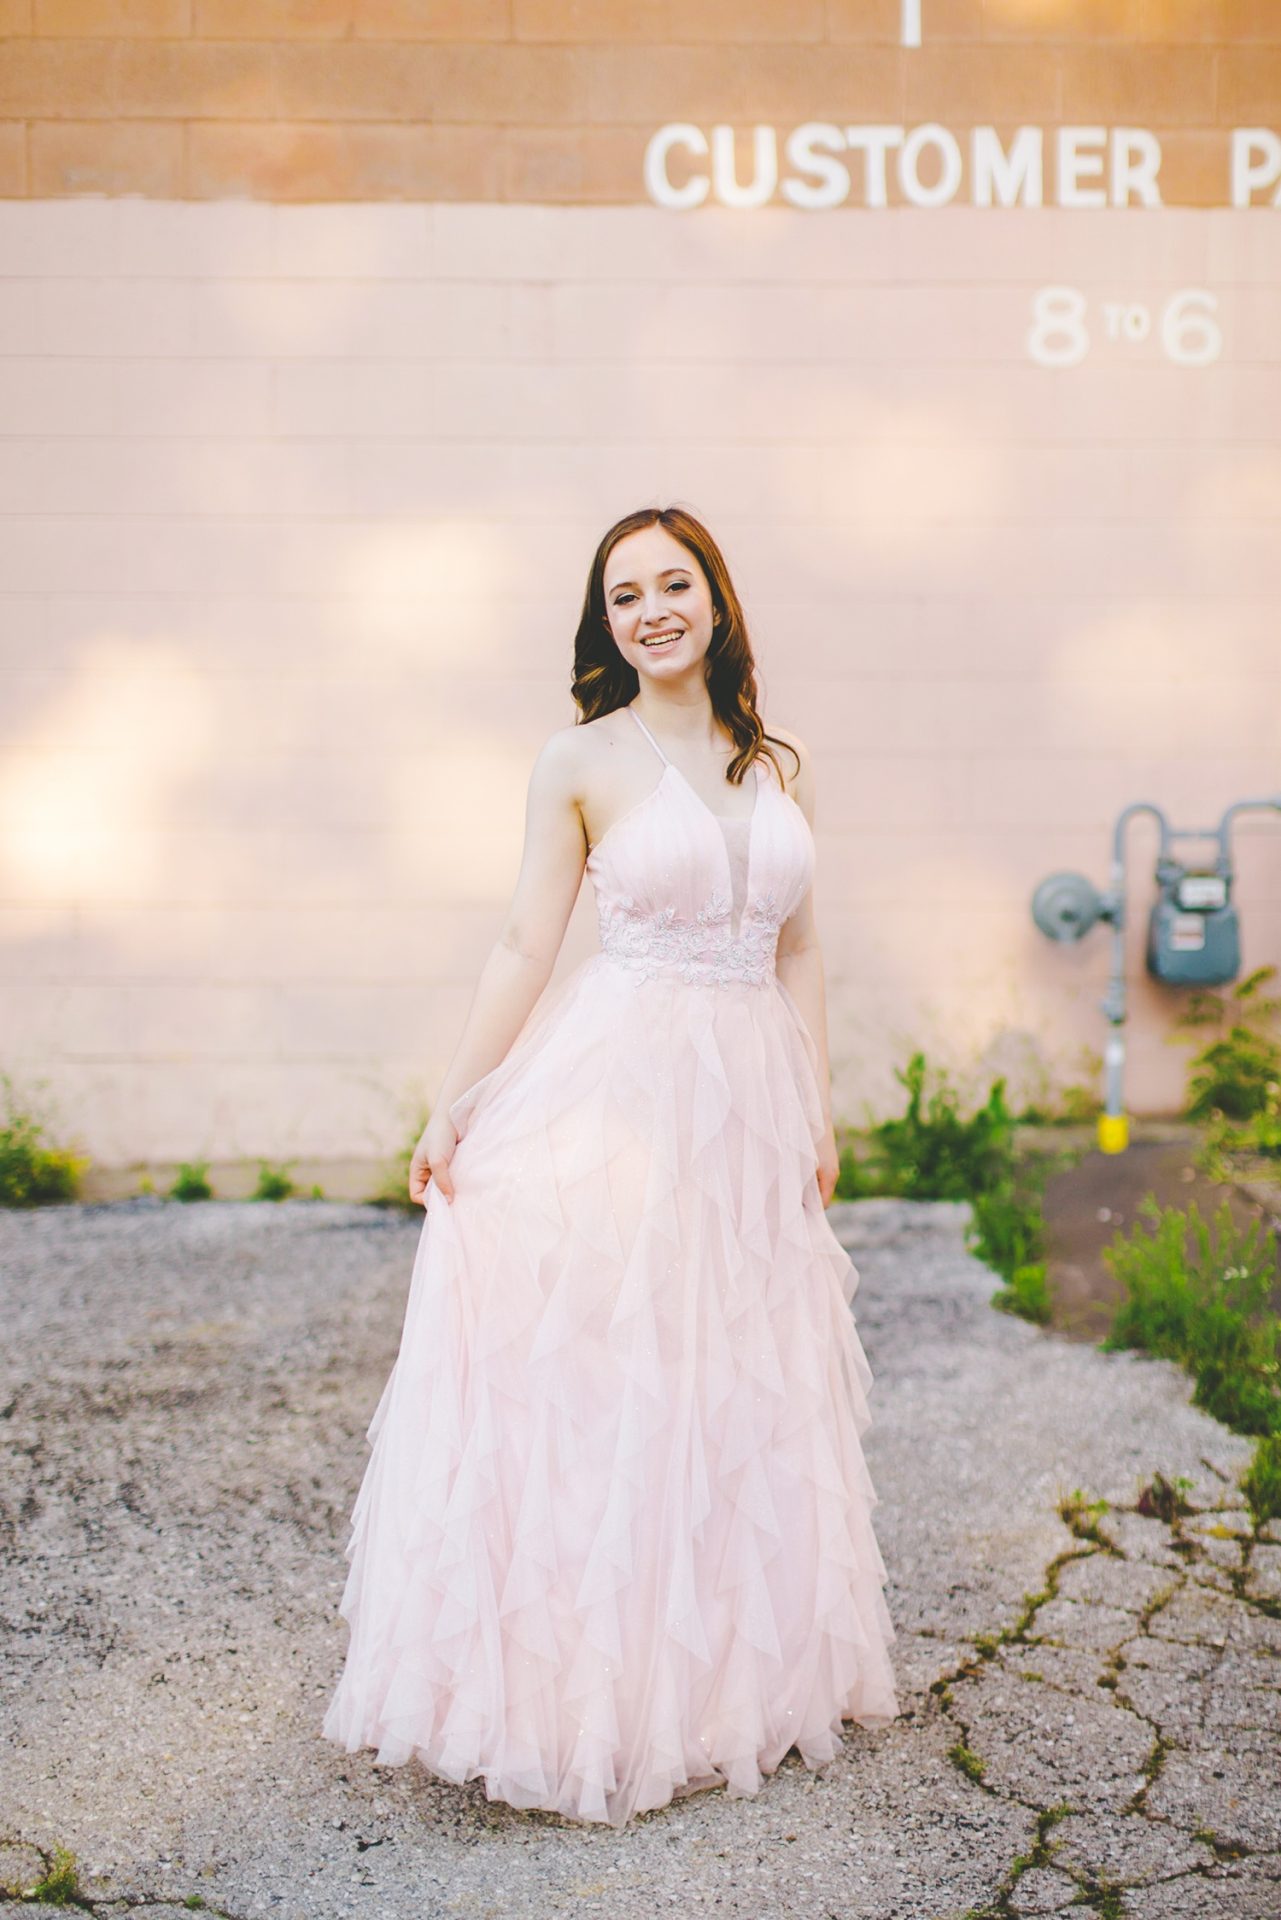 senior photographs in prom dress